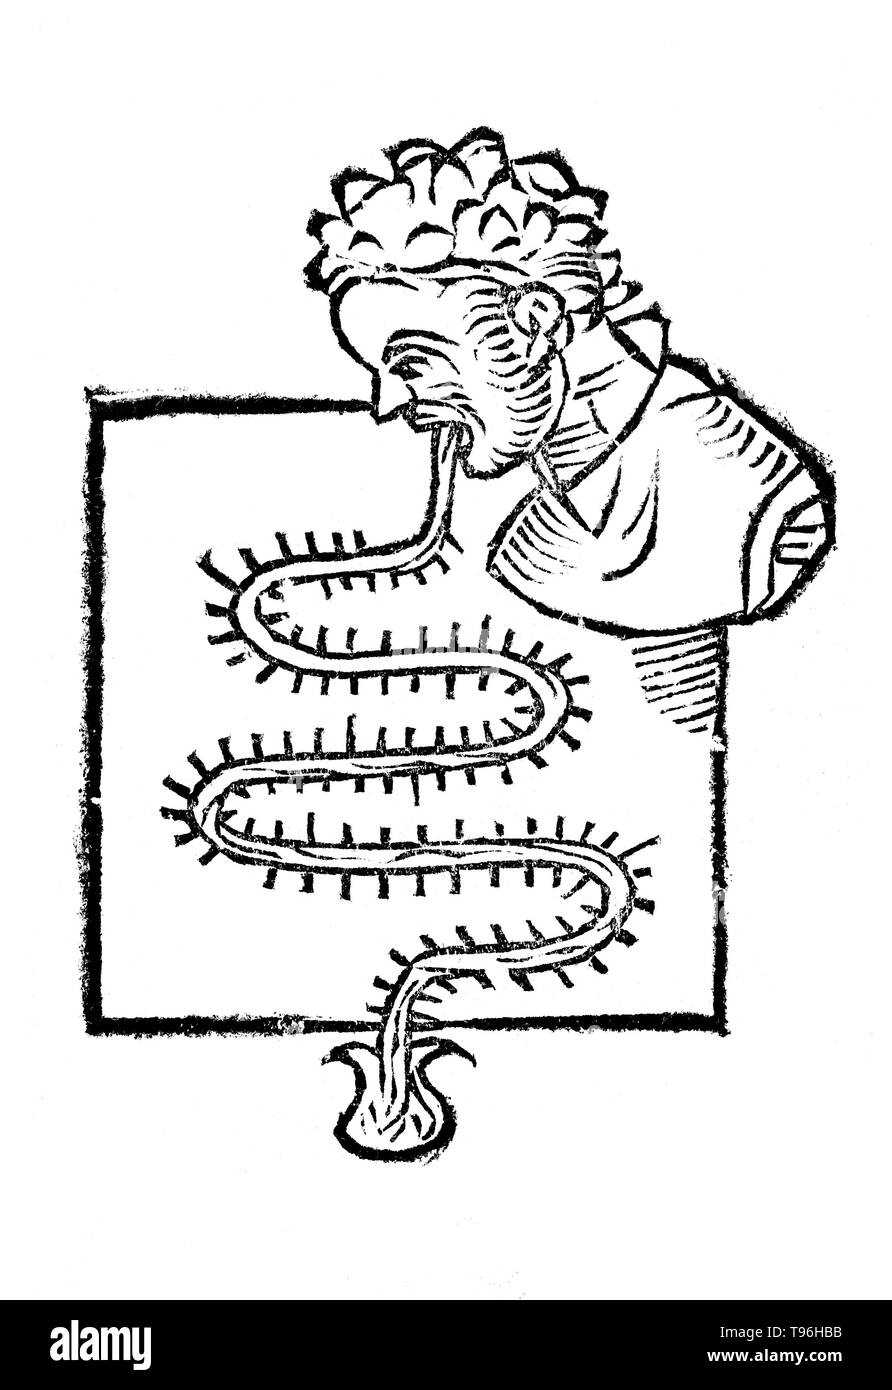 Primum Instrumentum. Santorio Santorio (Mars 29, 1561 - février 22, 1636) était un médecin physiologiste, vénitien, et le professeur, qui a présenté l'approche quantitative en médecine. Il est également connu comme l'inventeur de plusieurs instruments médicaux. Son travail de Statica Medicina, écrit en 1614, a vu un grand nombre de publications et influencé des générations de médecins. Santorio a introduit le thermoscope dans Sanctorii Sanctorii l'œuvre intitulée Commentaria in artem medicinalem Galeni en 1612. Banque D'Images